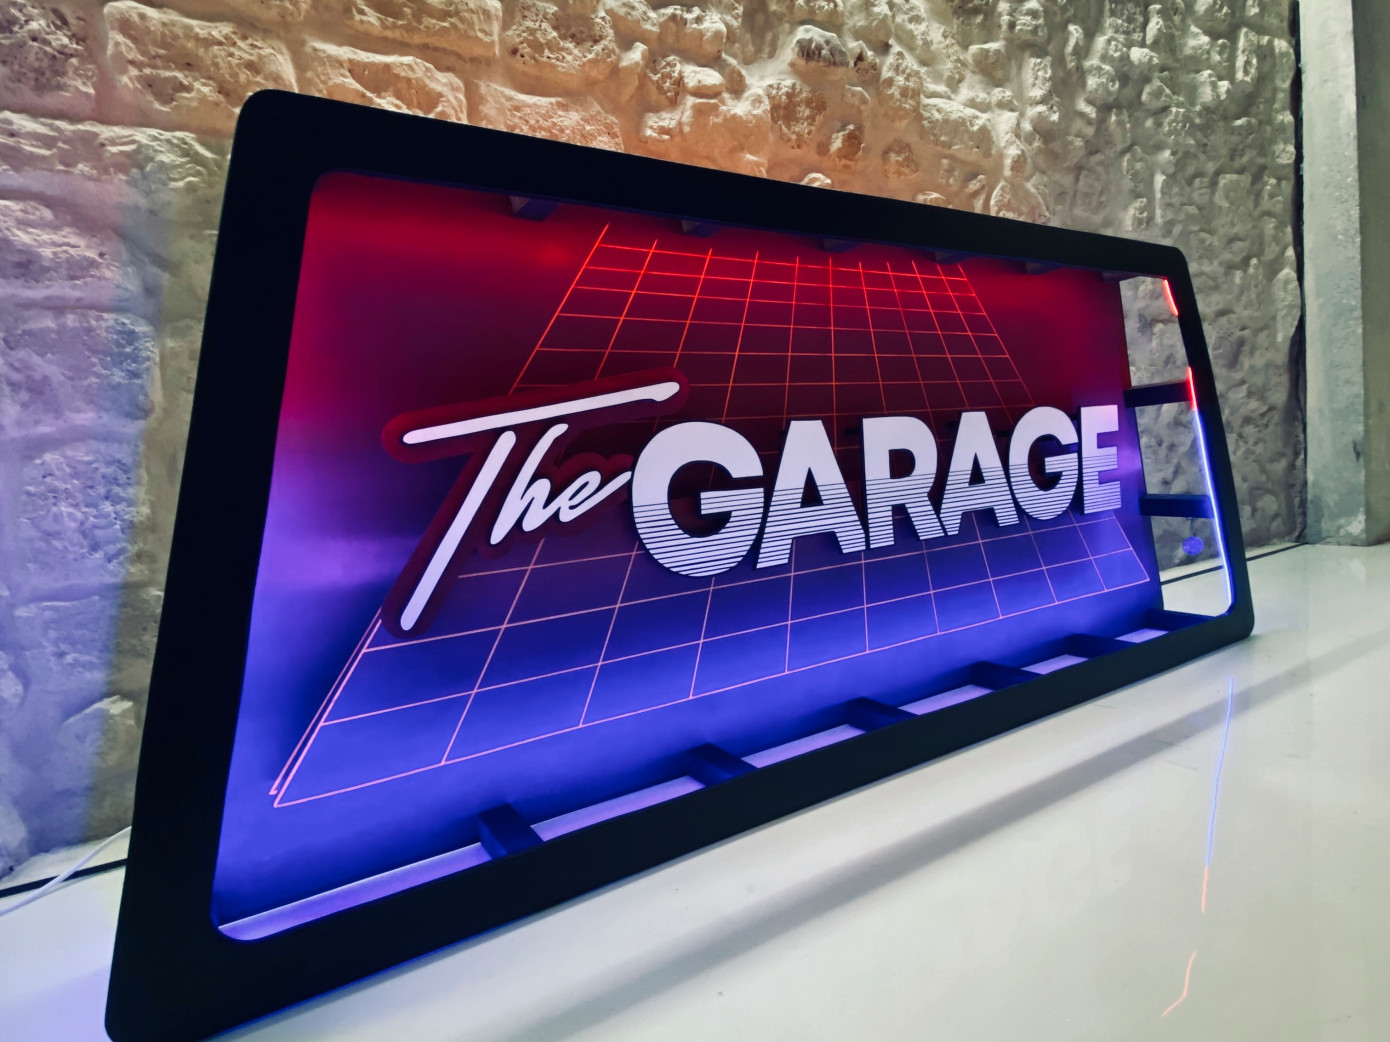 Develop Blockchain in "The Garage"